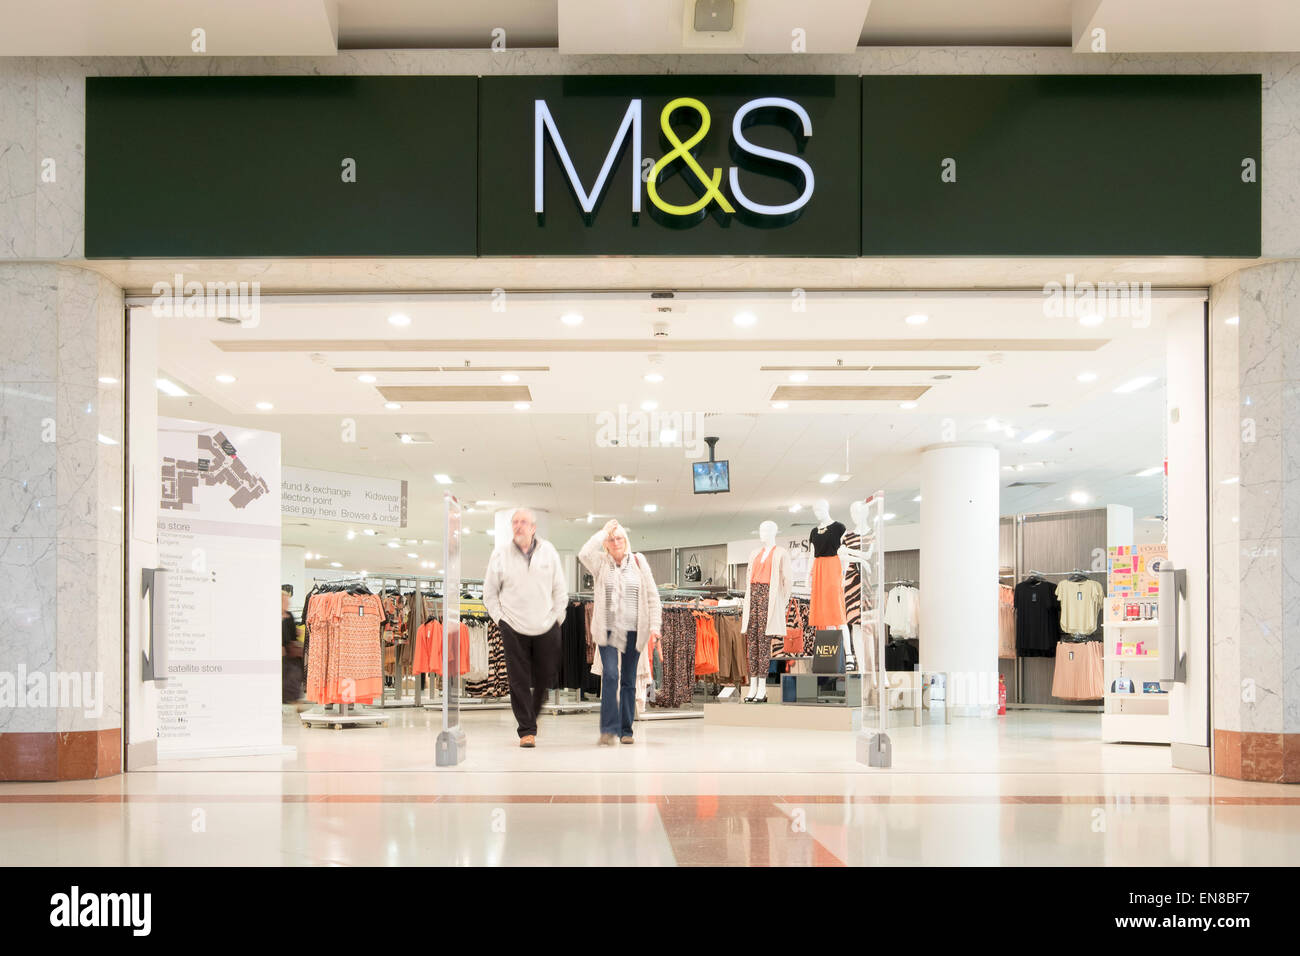 M&S store, Merry Hill, UK. Stock Photo